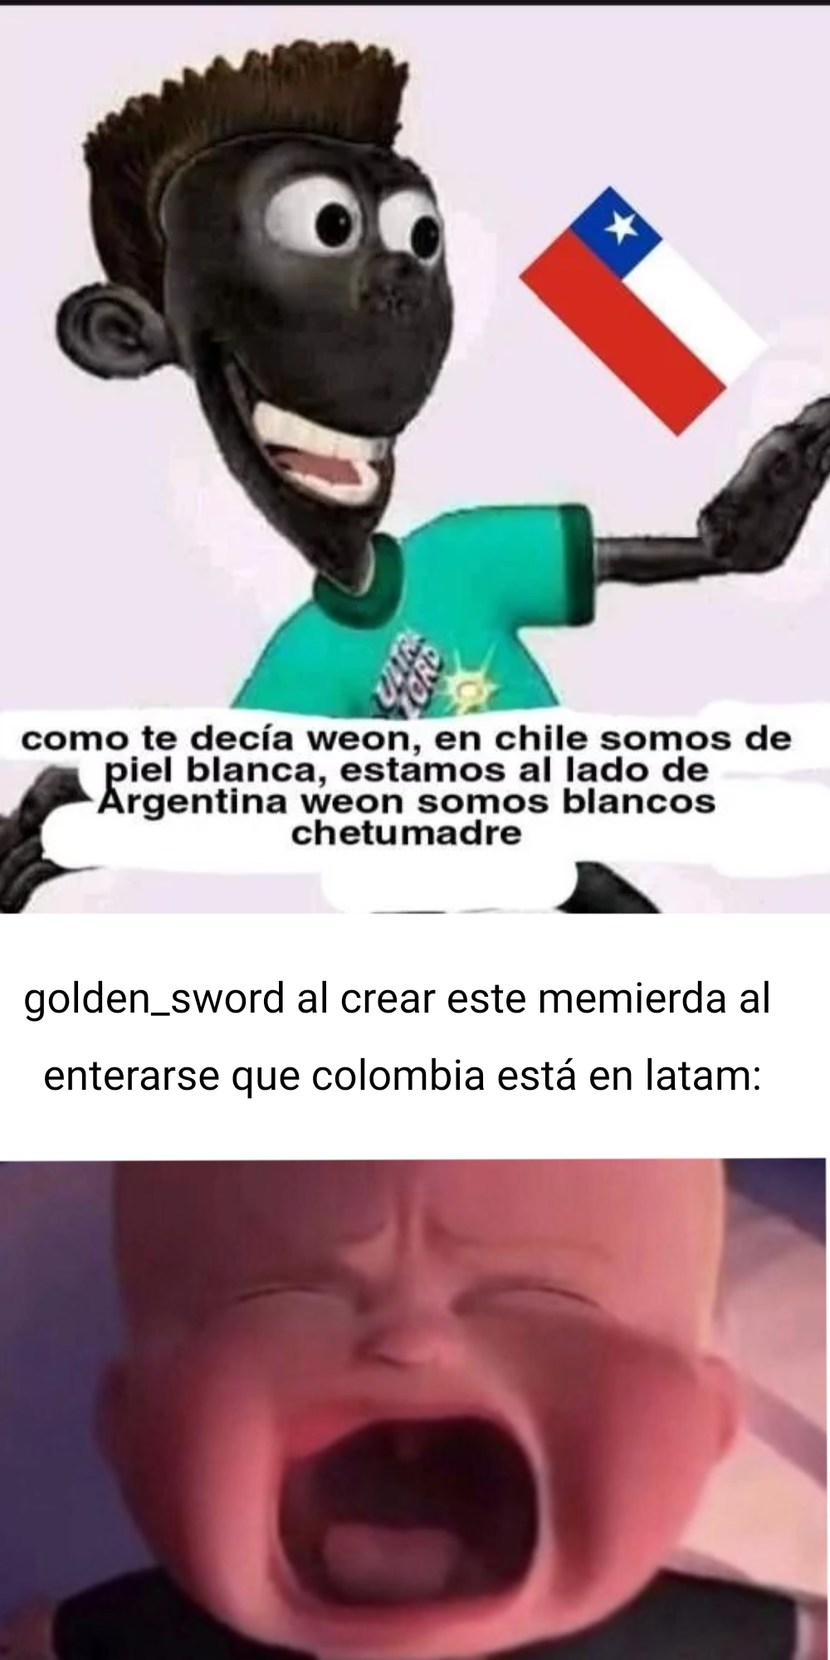 When Te Burlas De Latam: Eso Golden_Sword :genius: but colombia está en latam: :soyjakb: - meme